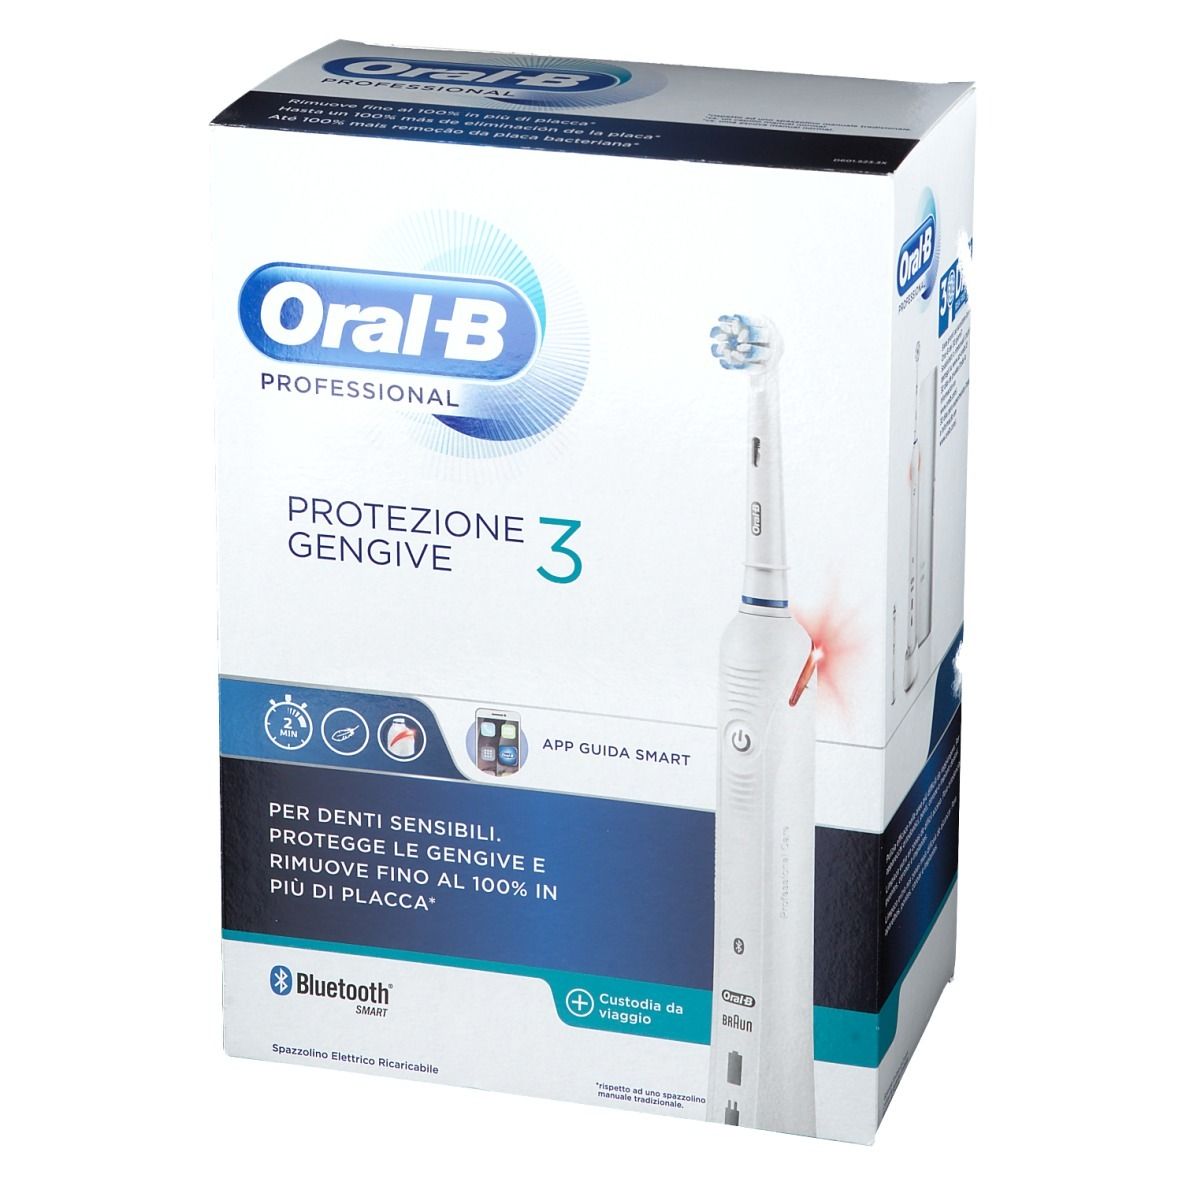 Oral-B Nettoyage Professionnel 3 Spazzolino elettrico Gum Care Protect x1 -  Easypara